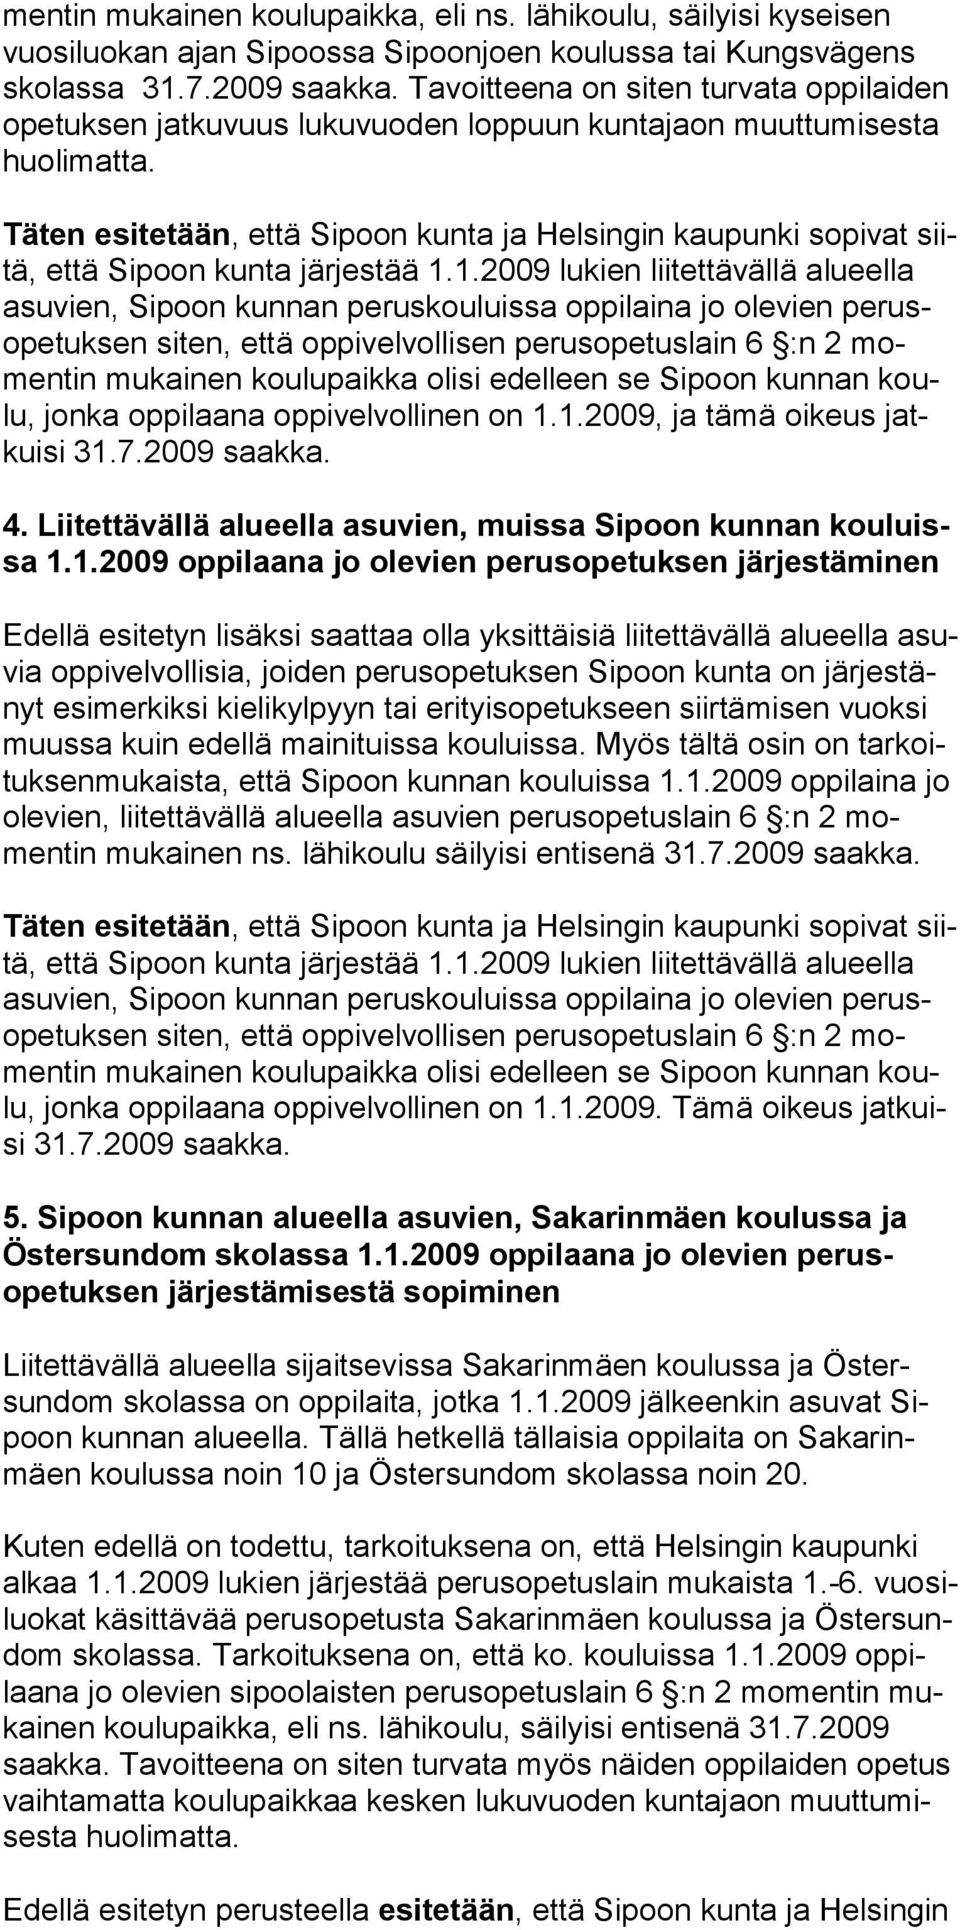 Täten esitetään, että Sipoon kunta ja Helsingin kaupunki sopivat siitä, että Sipoon kunta järjestää 1.